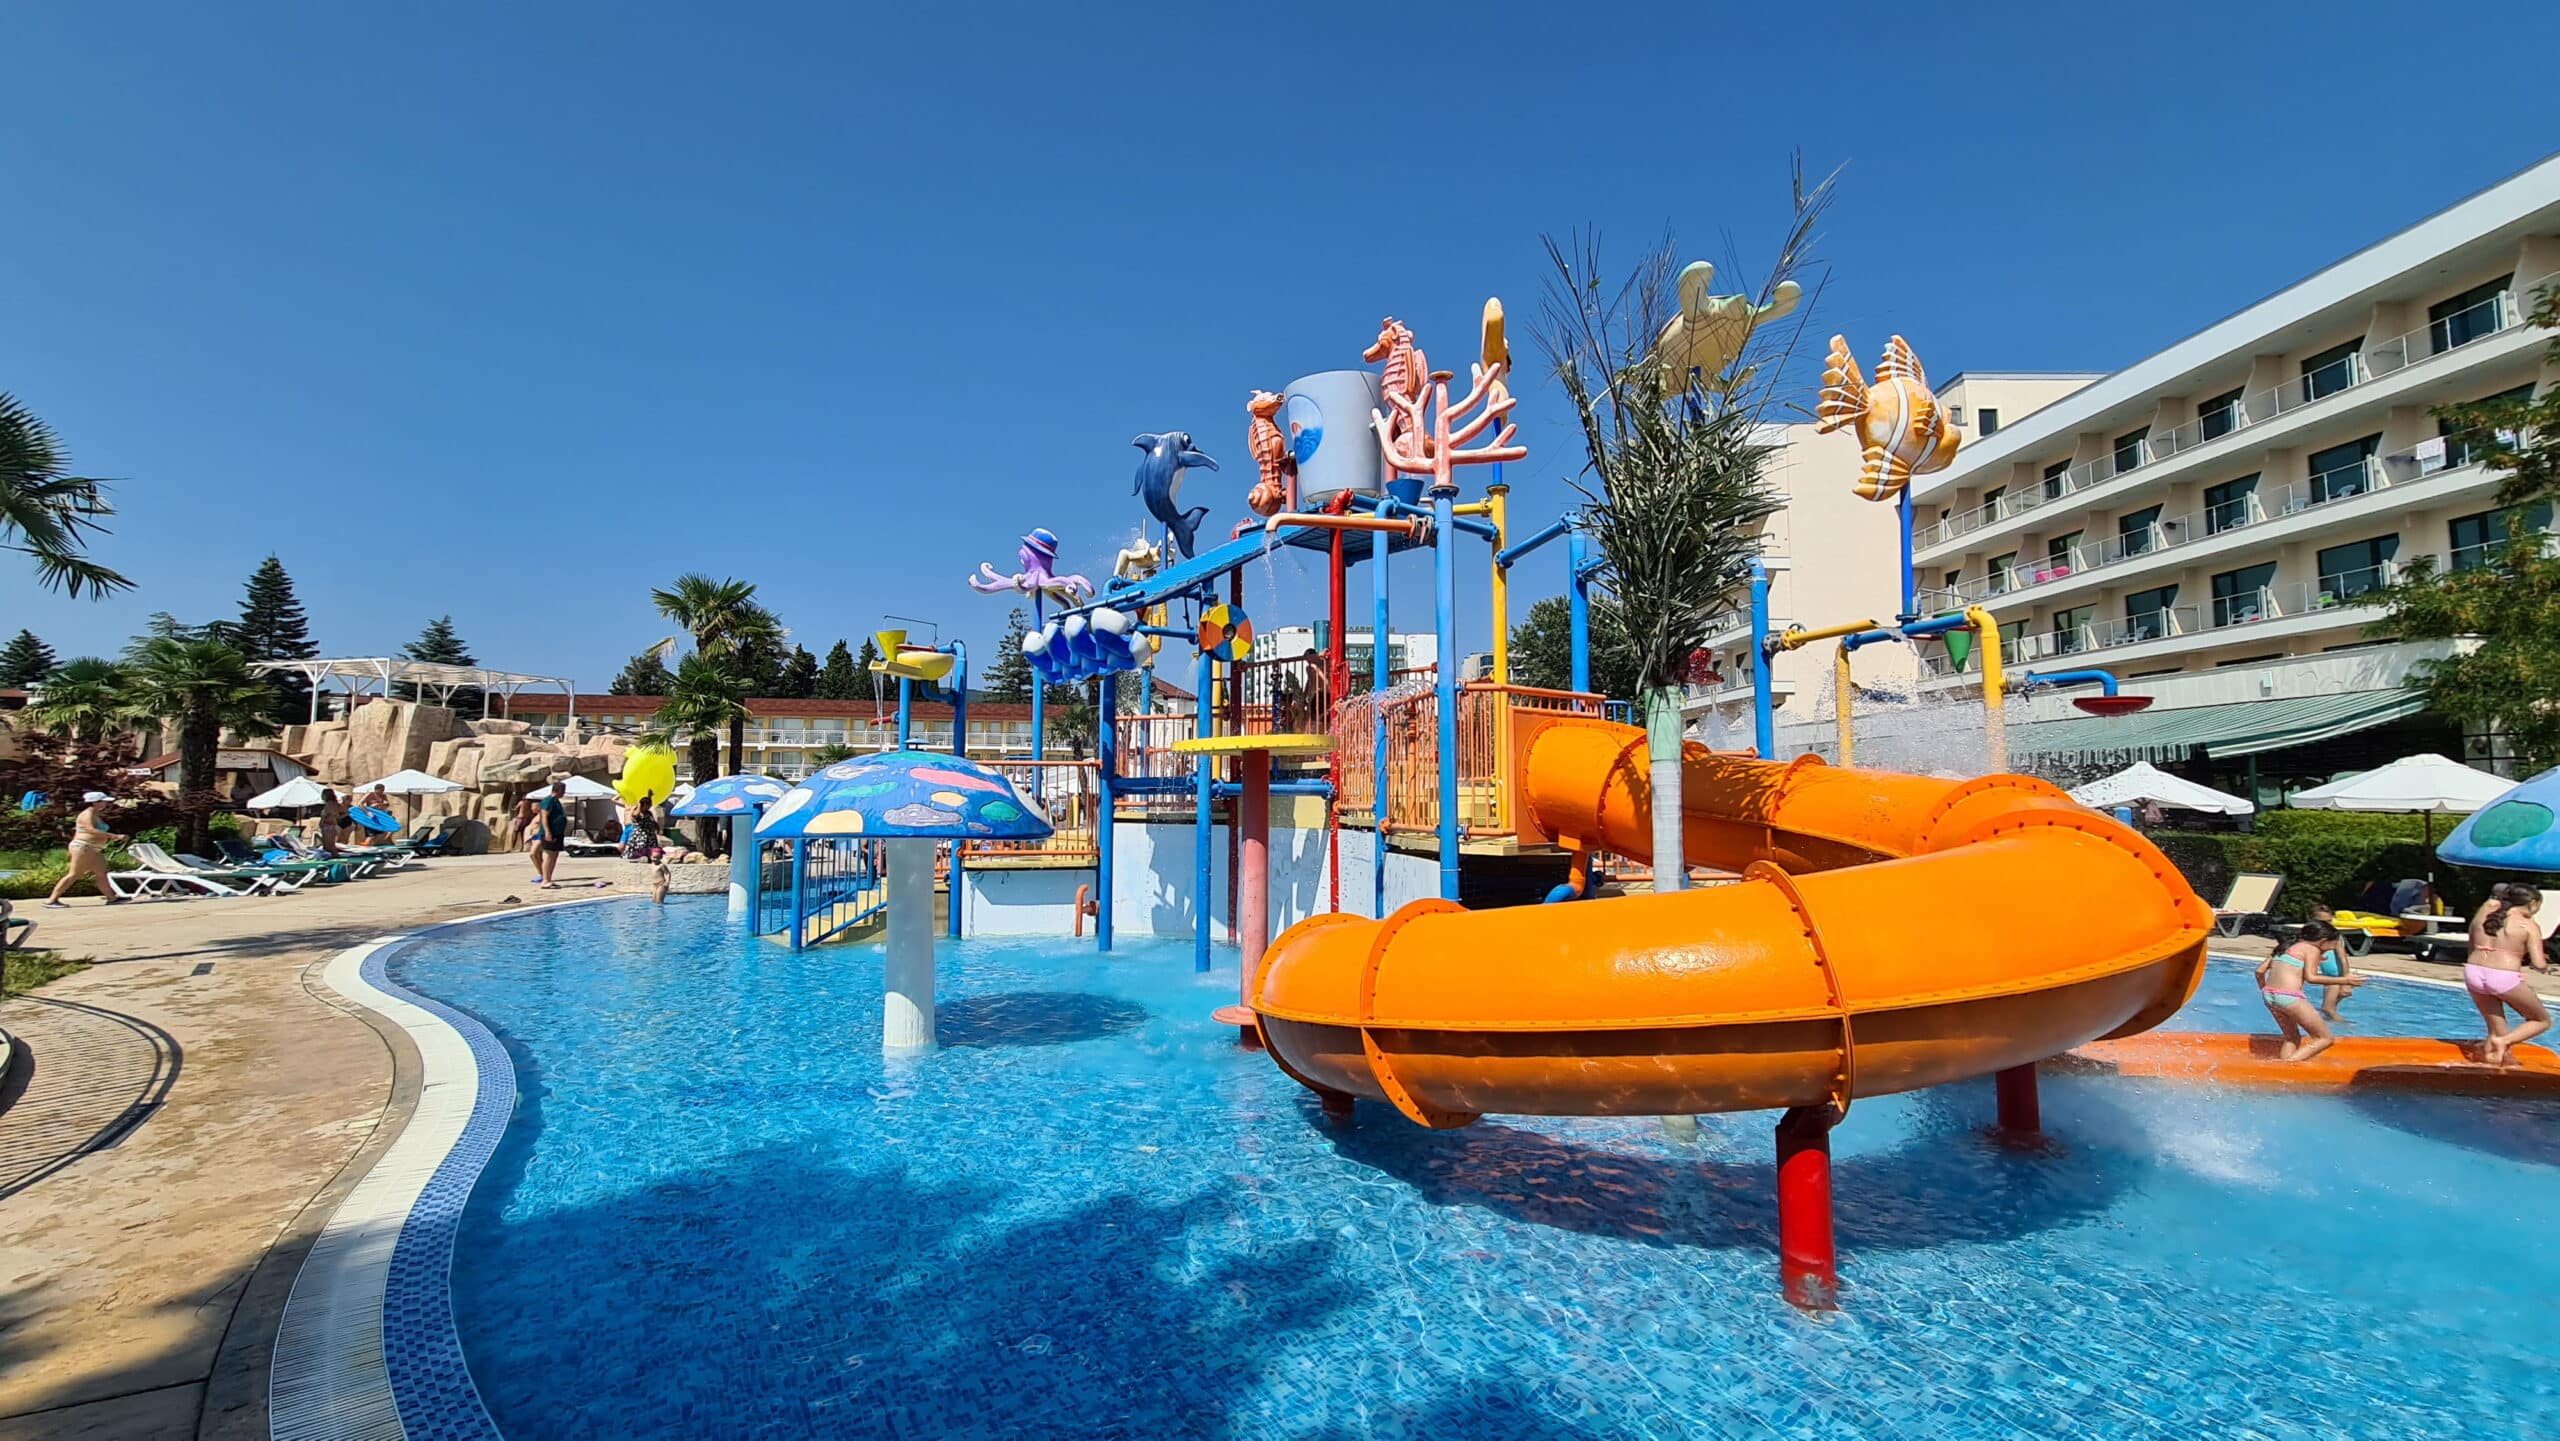 Evrika! Da, am descoperit o super locație de vacanță pentru familiile cu copii. Review despre DIT Hotel Evrika Beach Club Sunny Beach | Demamici.ro